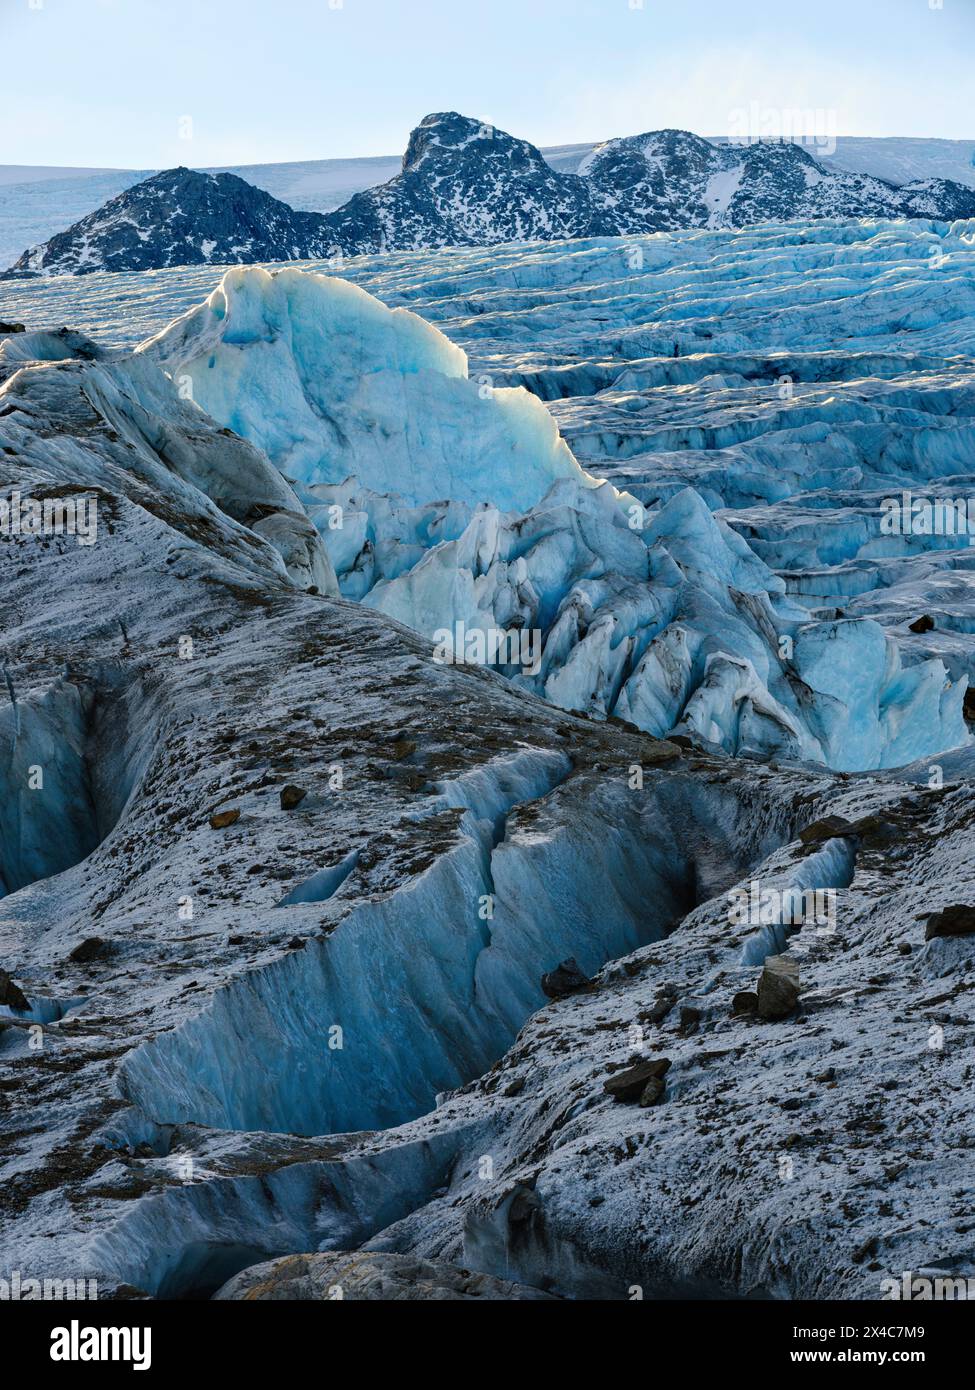 Ghiacciaio di Hahn. Paesaggio nel fiordo di Johan Petersen, un ramo del Sermilik Icefjord, regione di Ammassalik, Groenlandia, territorio danese. Foto Stock